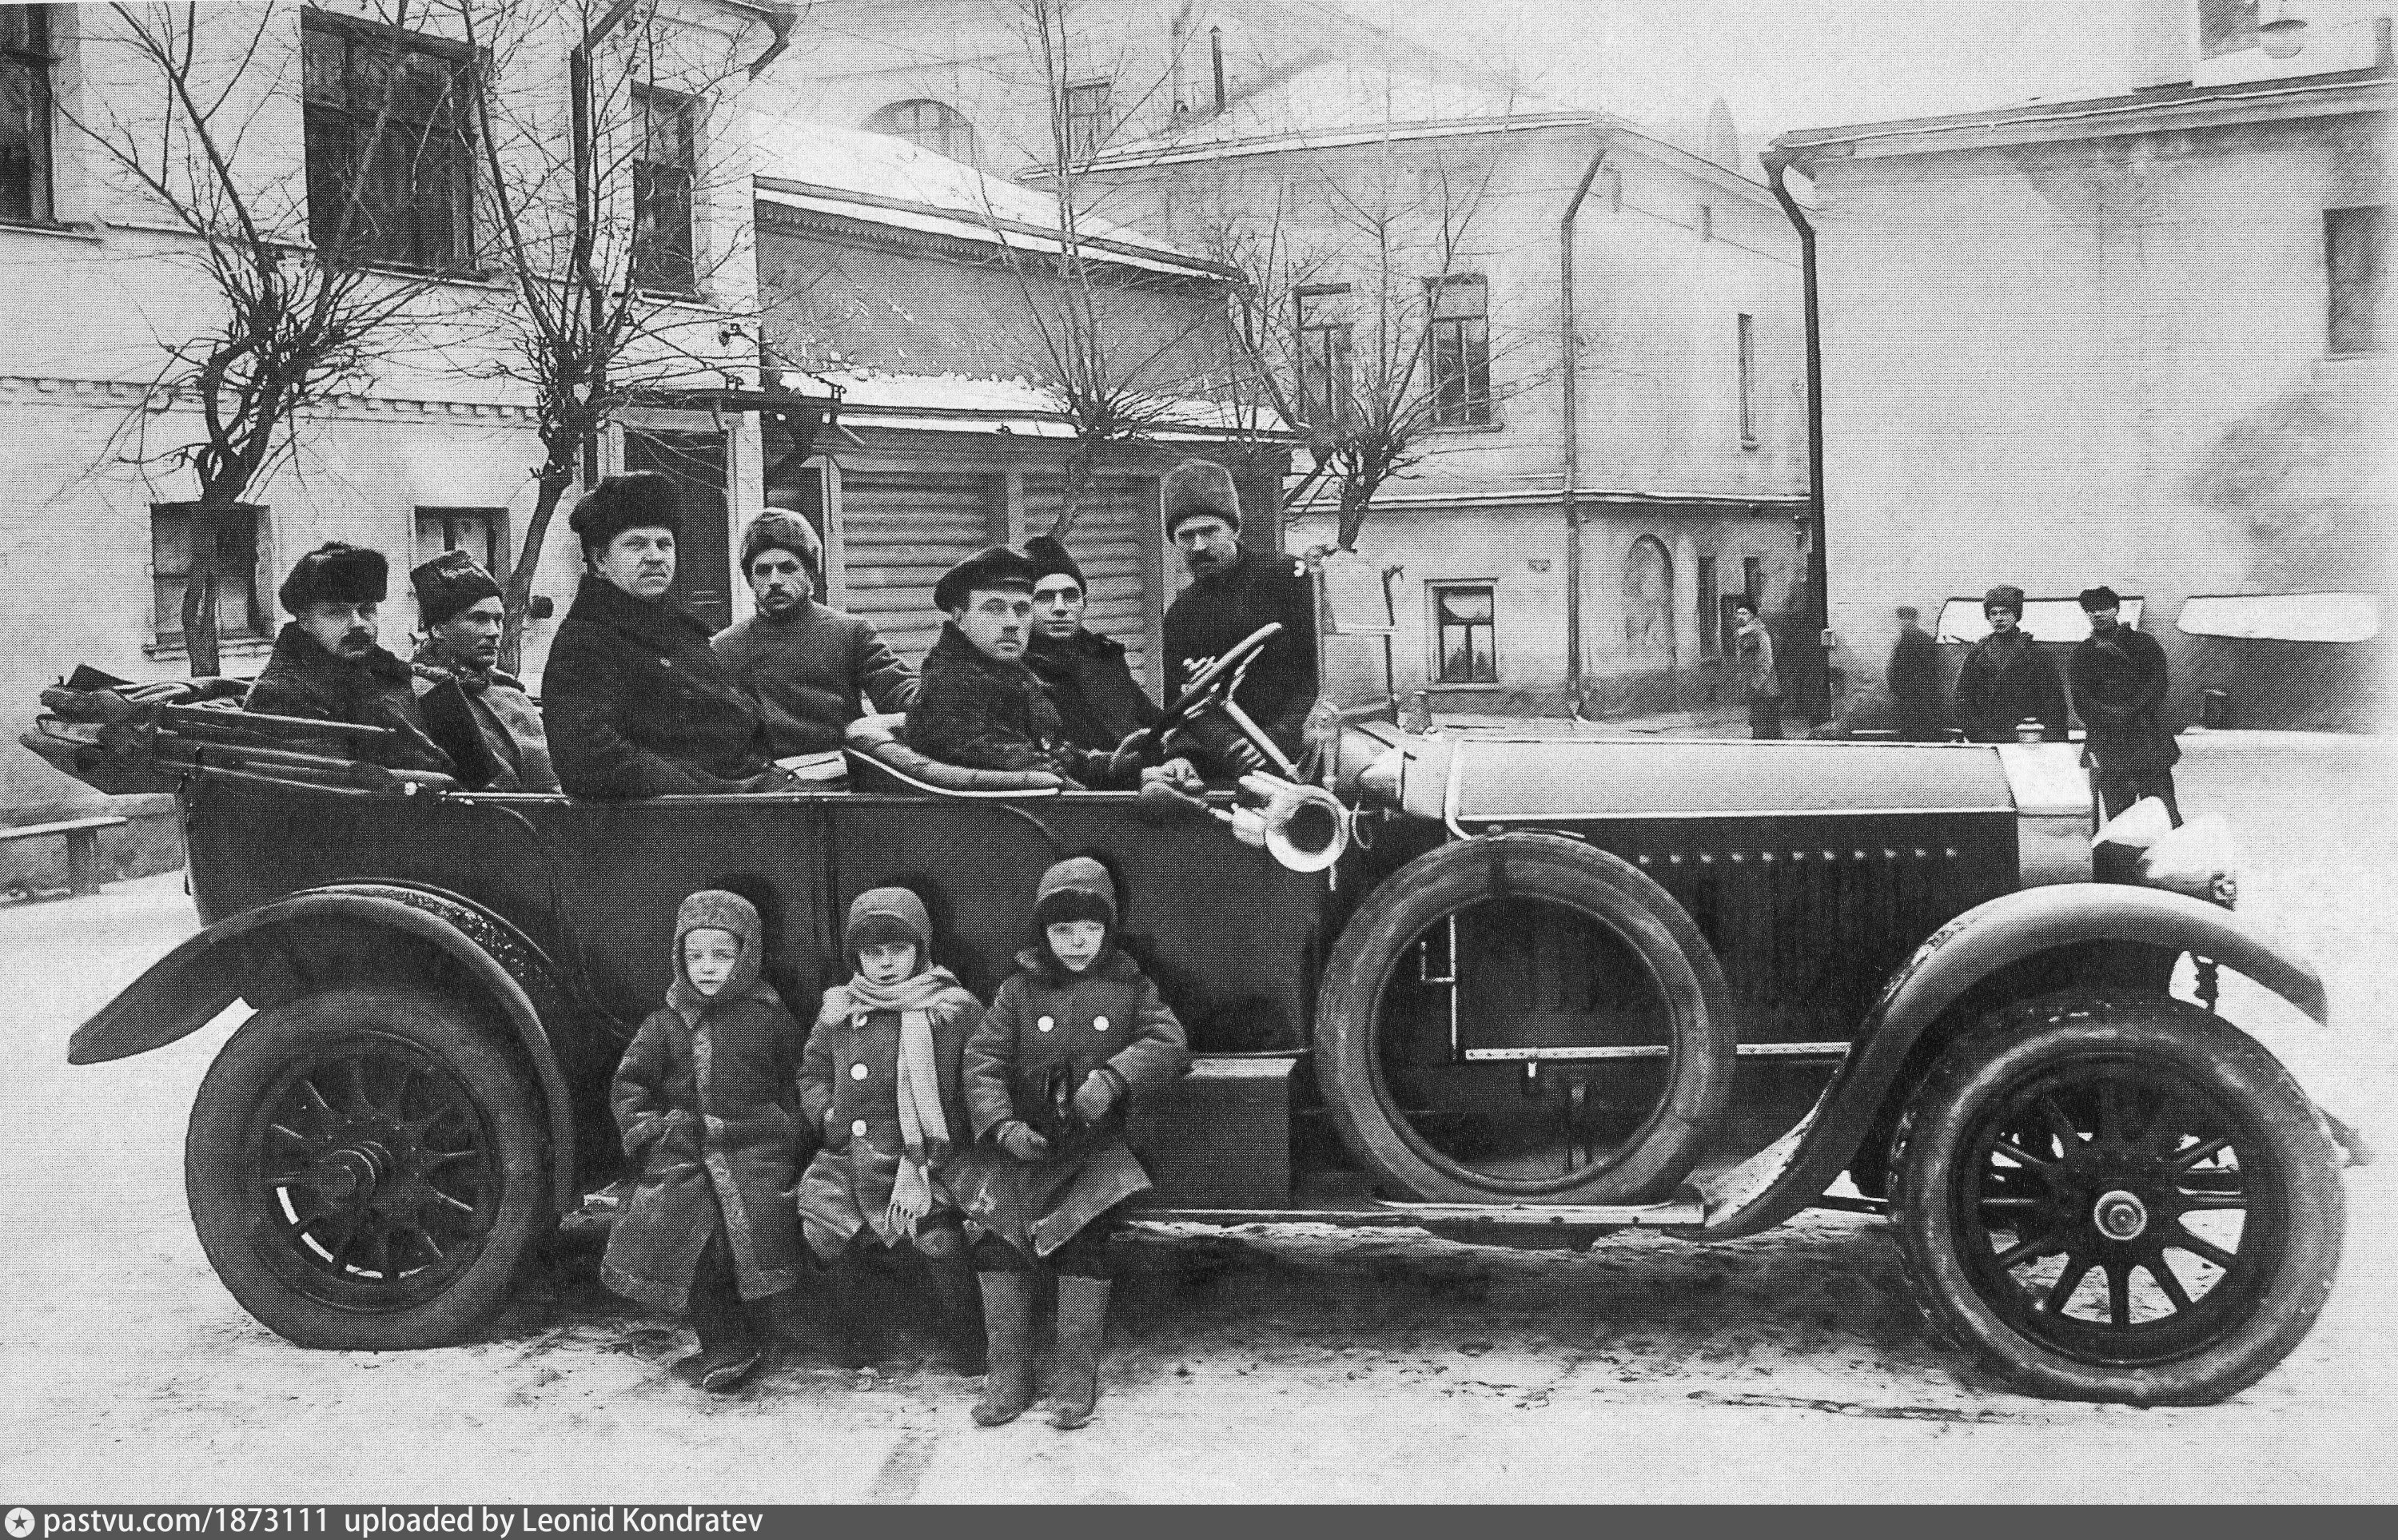 Мальчишки в почти одинаковых тулупах тоже сфотографировались рядом с автомобилем, которые тогда еще были редкостью